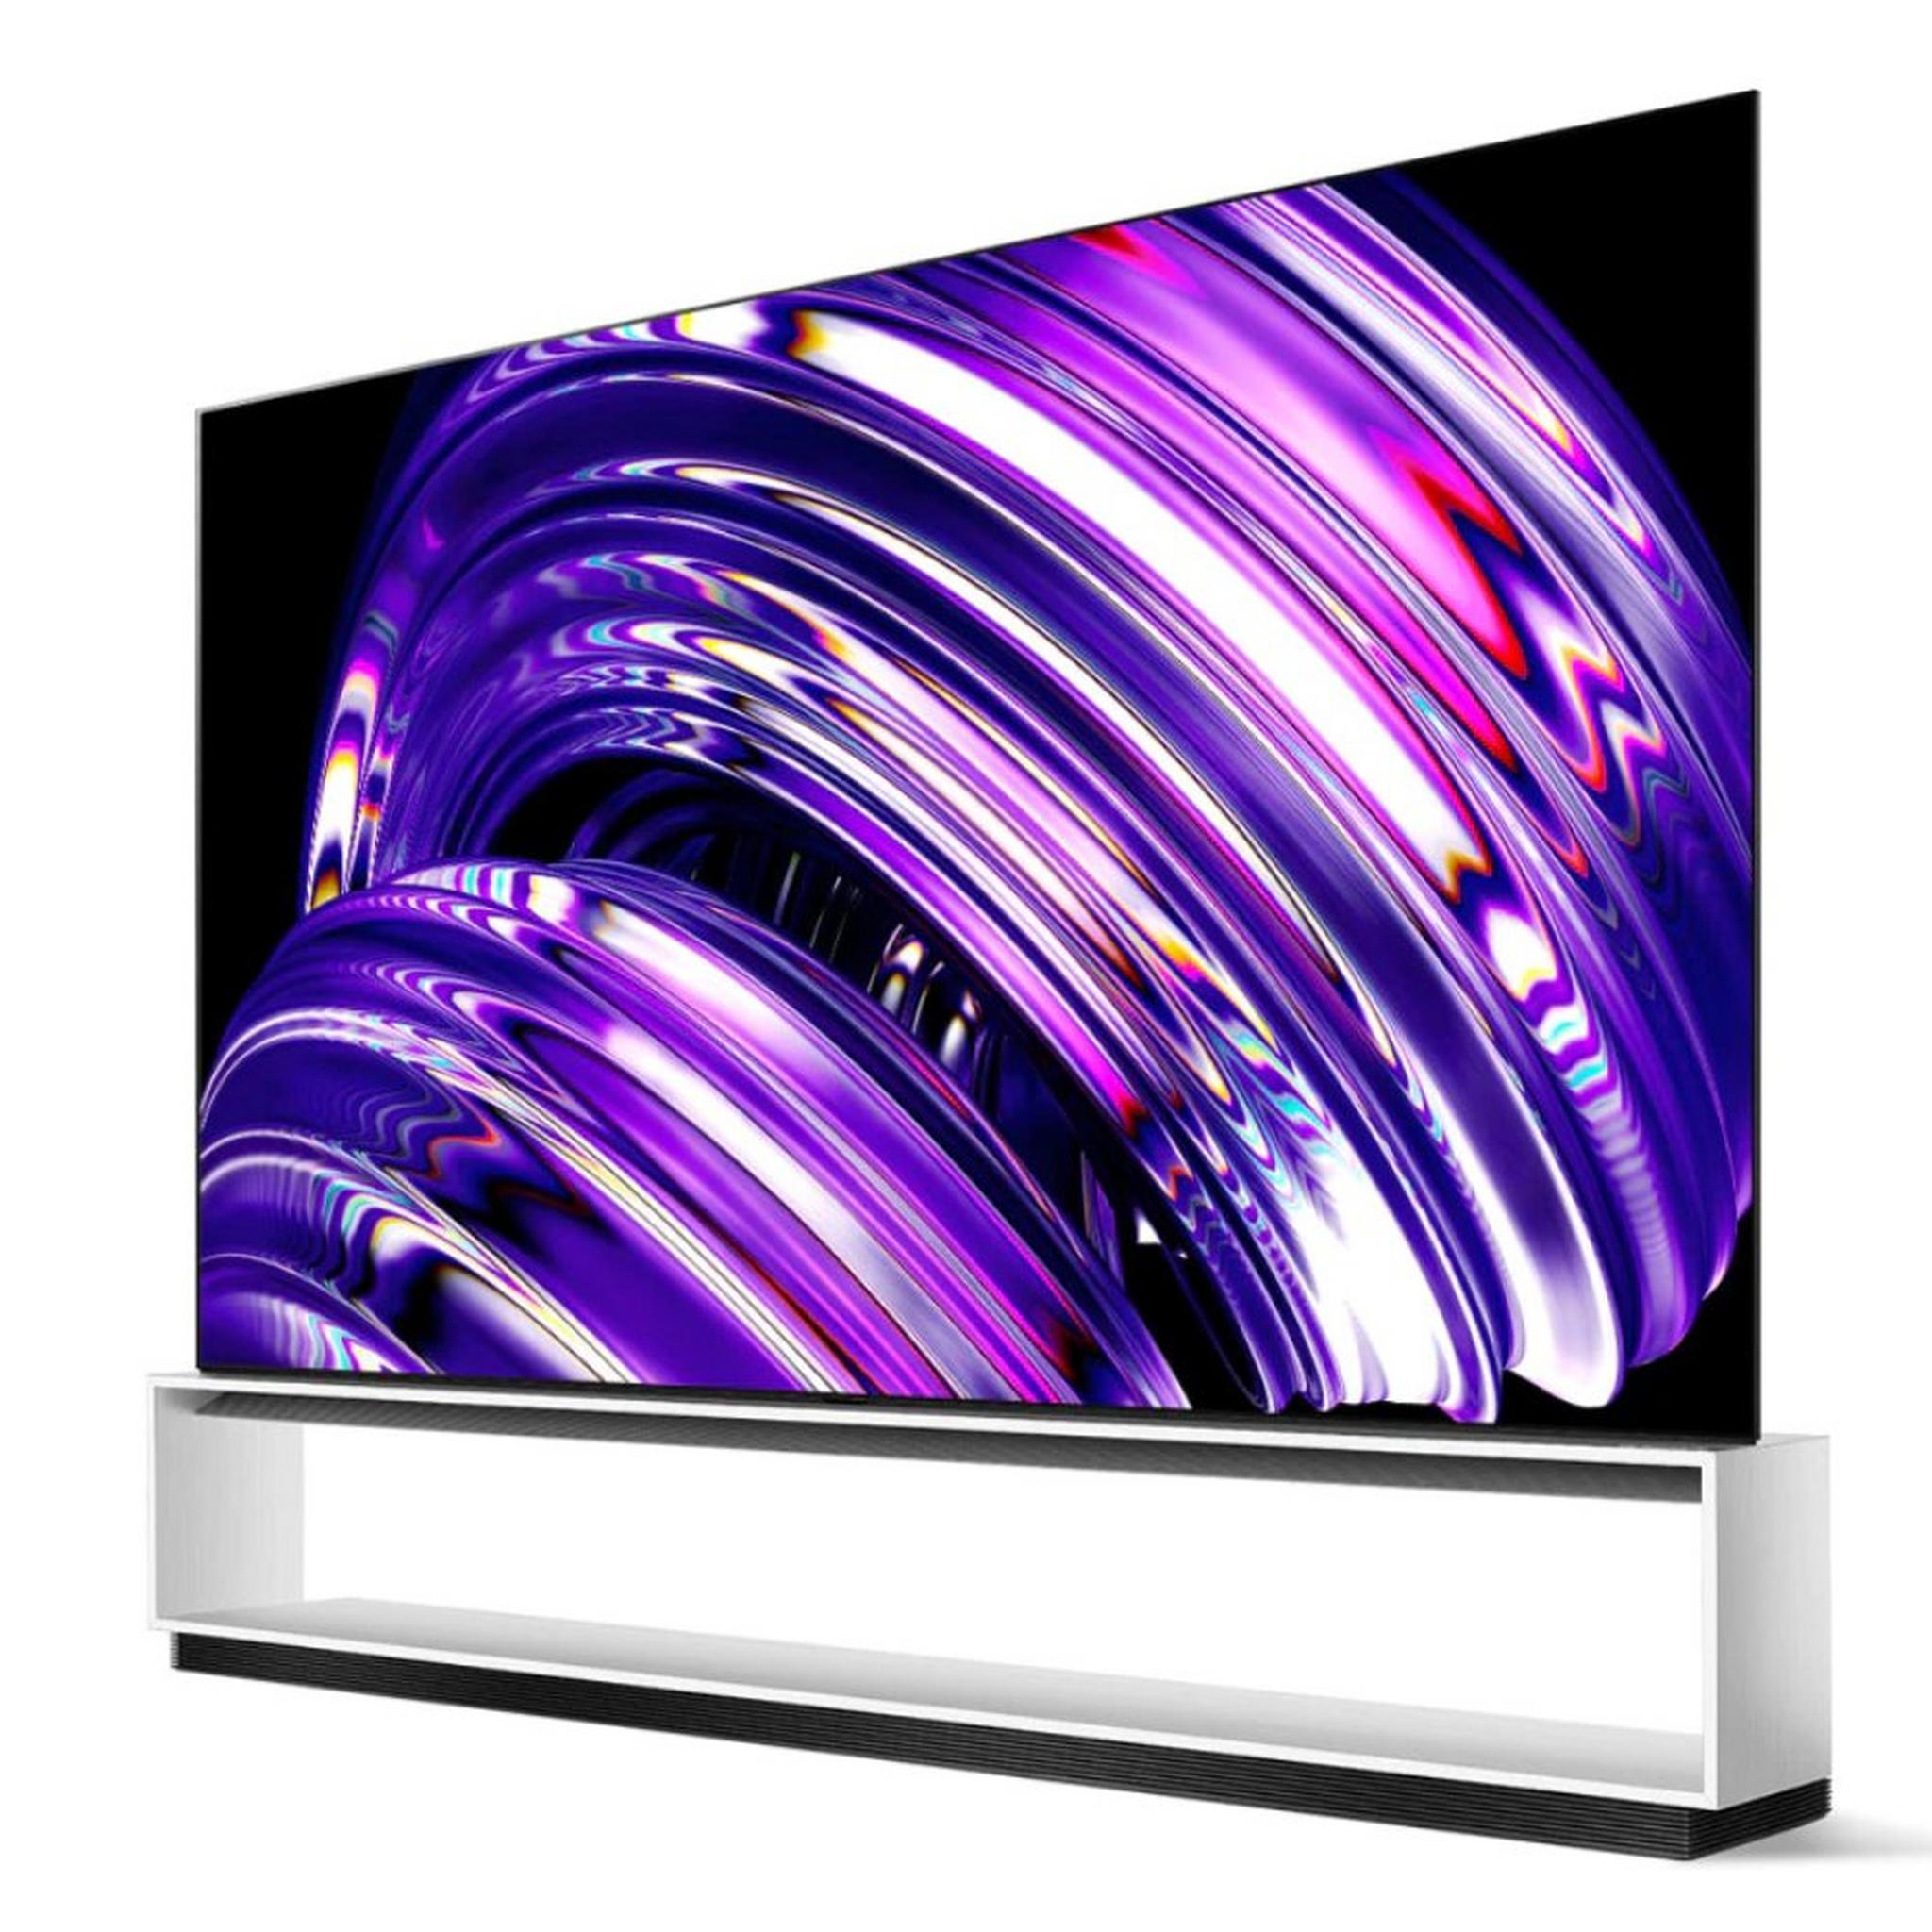 شاشة تلفزيون  ذكي سلسلة زد 2 مقاس 88 بوصة من إل جي، اوه ليد 8 كيه، OLED88Z2 - أسود